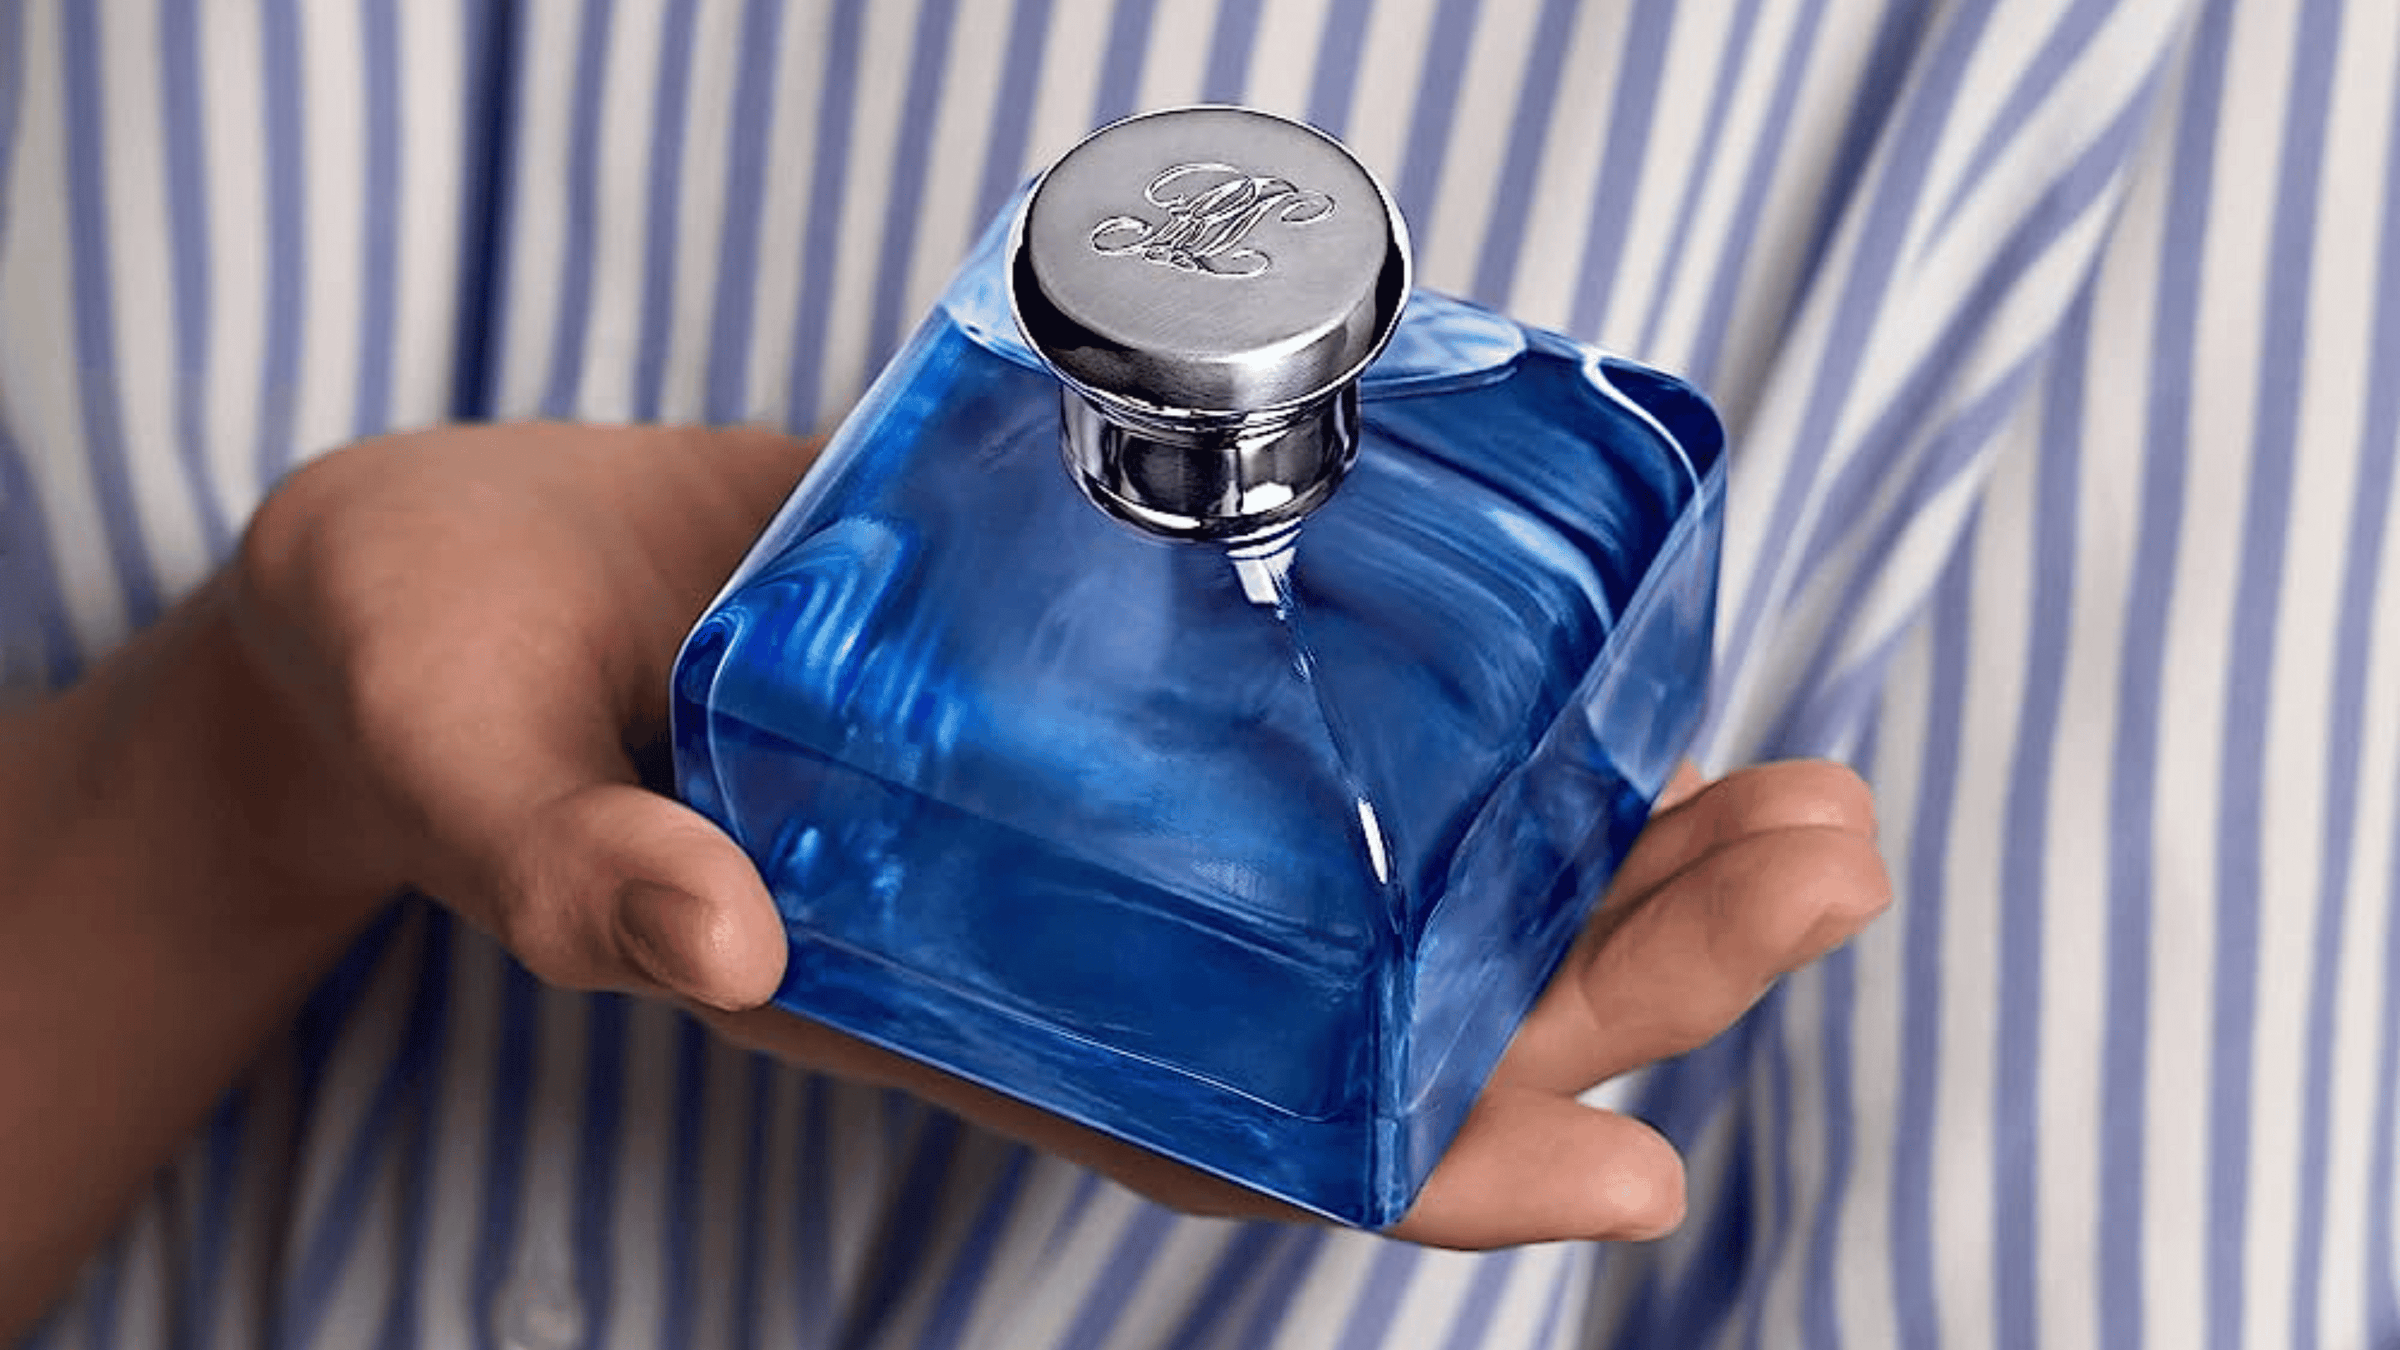 Ralph Lauren damparfym. Flaskan är blå med silvrigt lock.